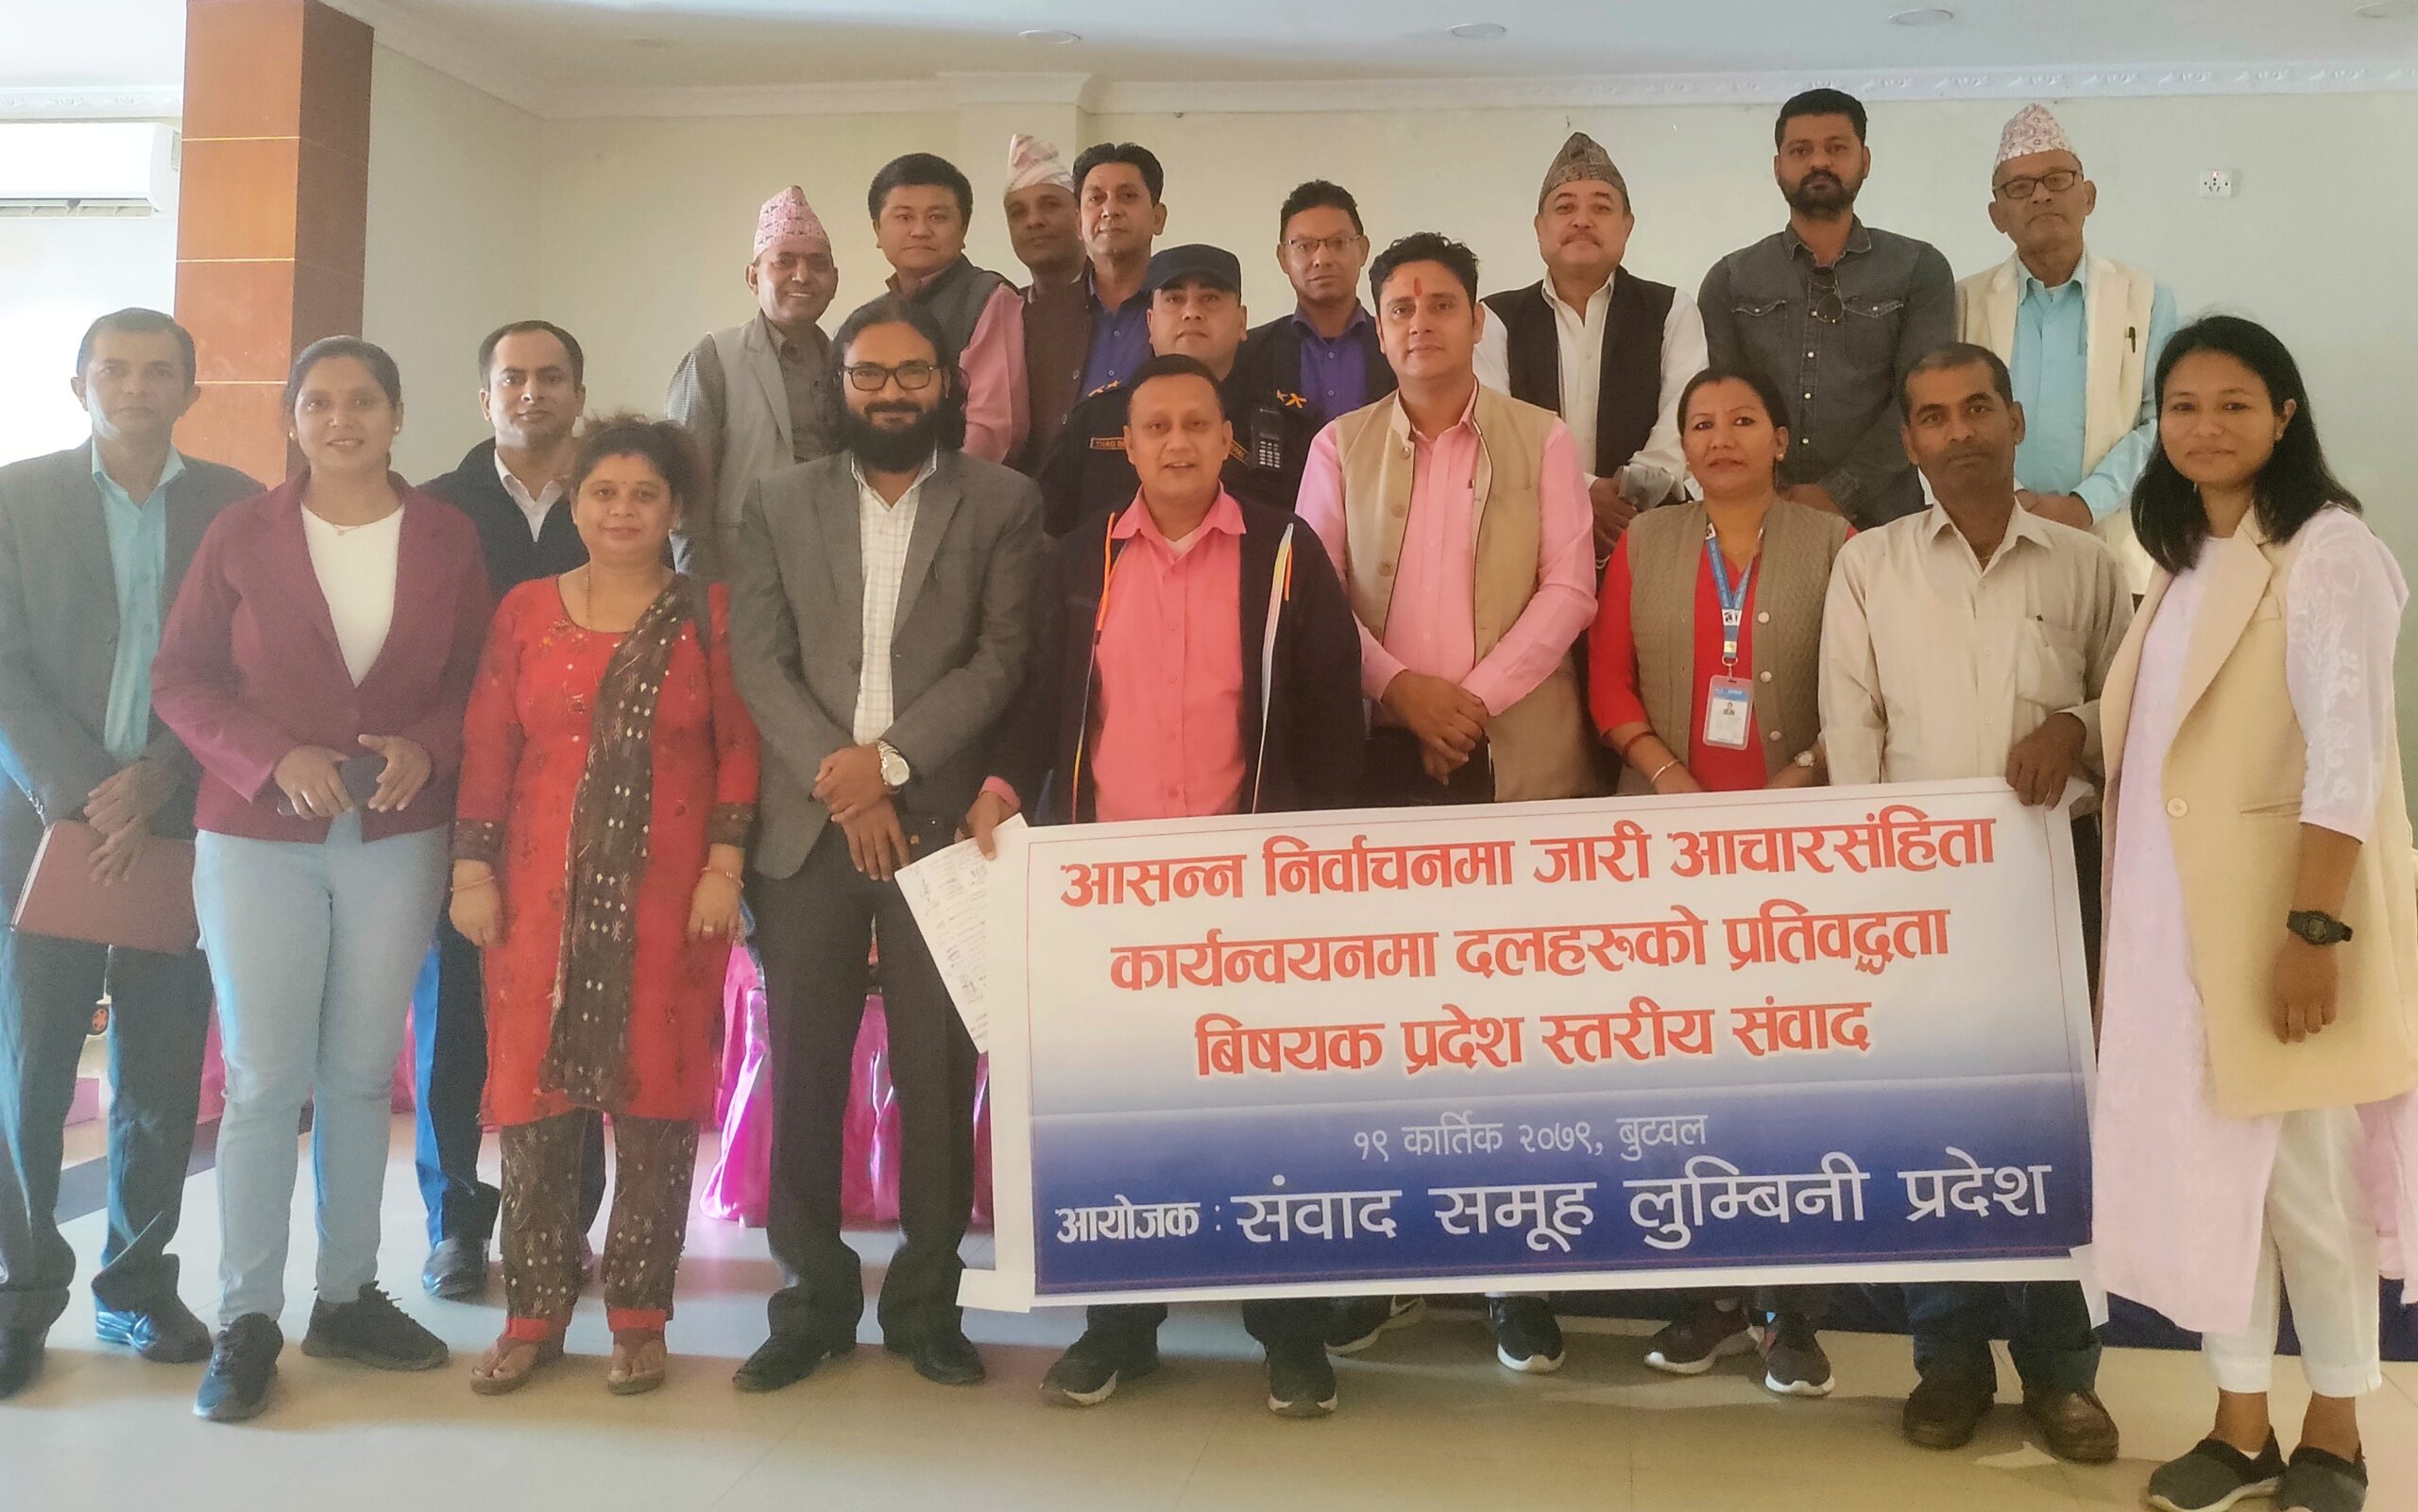 लुम्बिनीमा सक्रिय राजनीतिक दल भन्छन् - आचारसंहिता पालना गर्न प्रतिवद्ध छौँ